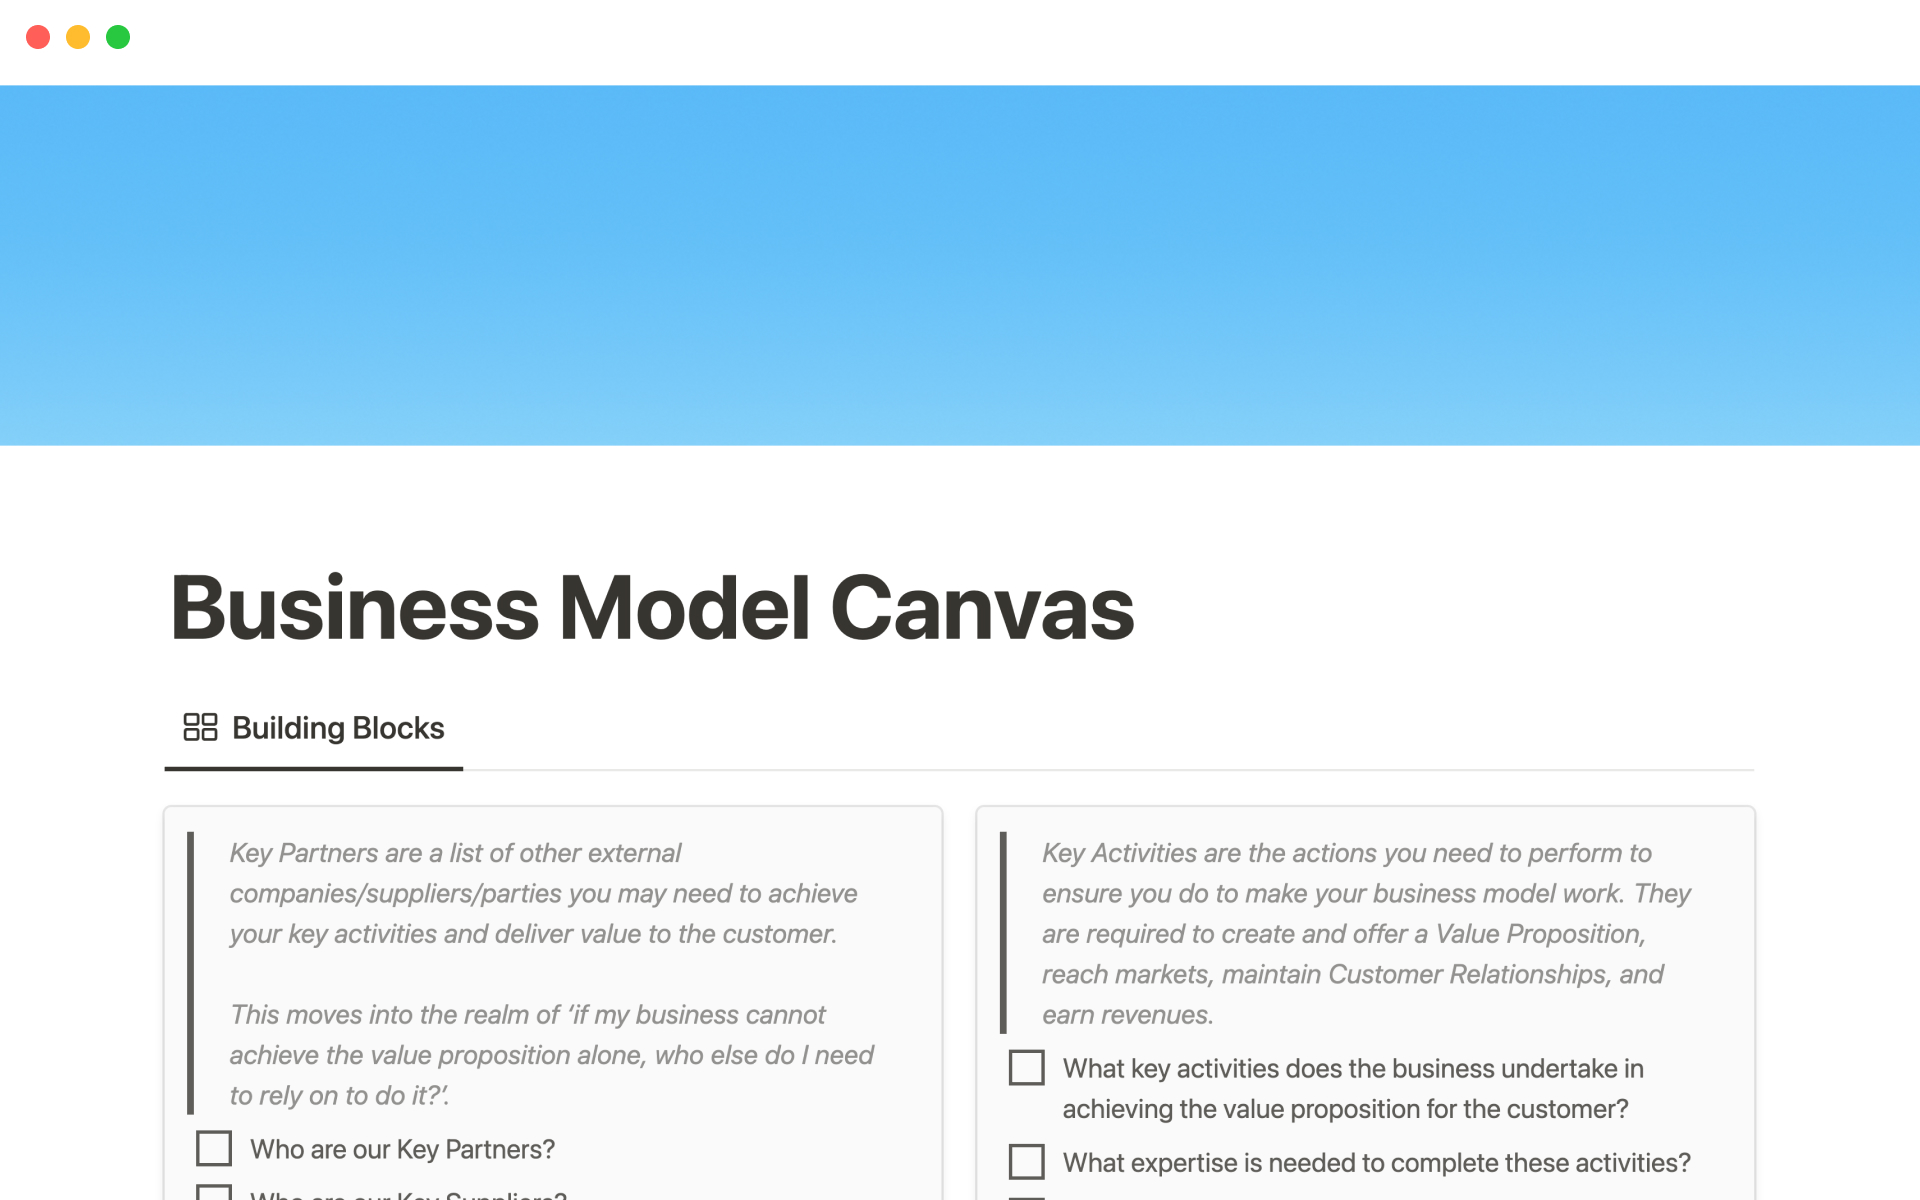 Uma prévia do modelo para Business model canvas